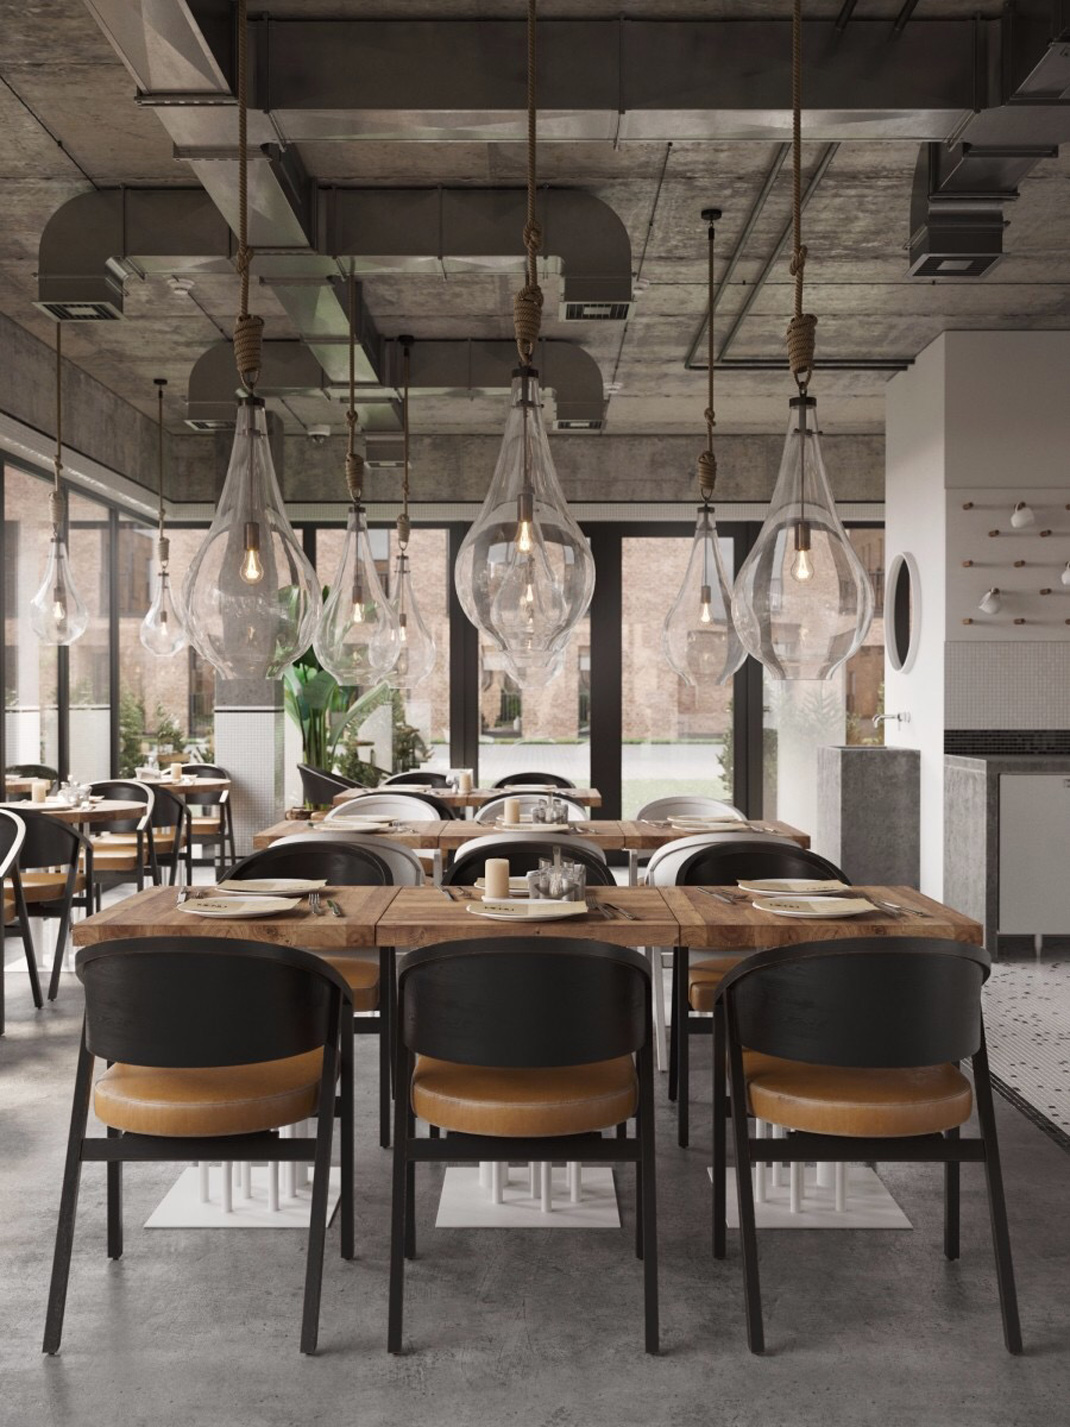 国外现代工业风餐厅 国外餐厅 工业风 餐饮空间 logo设计 VI设计 空间设计 视觉餐饮